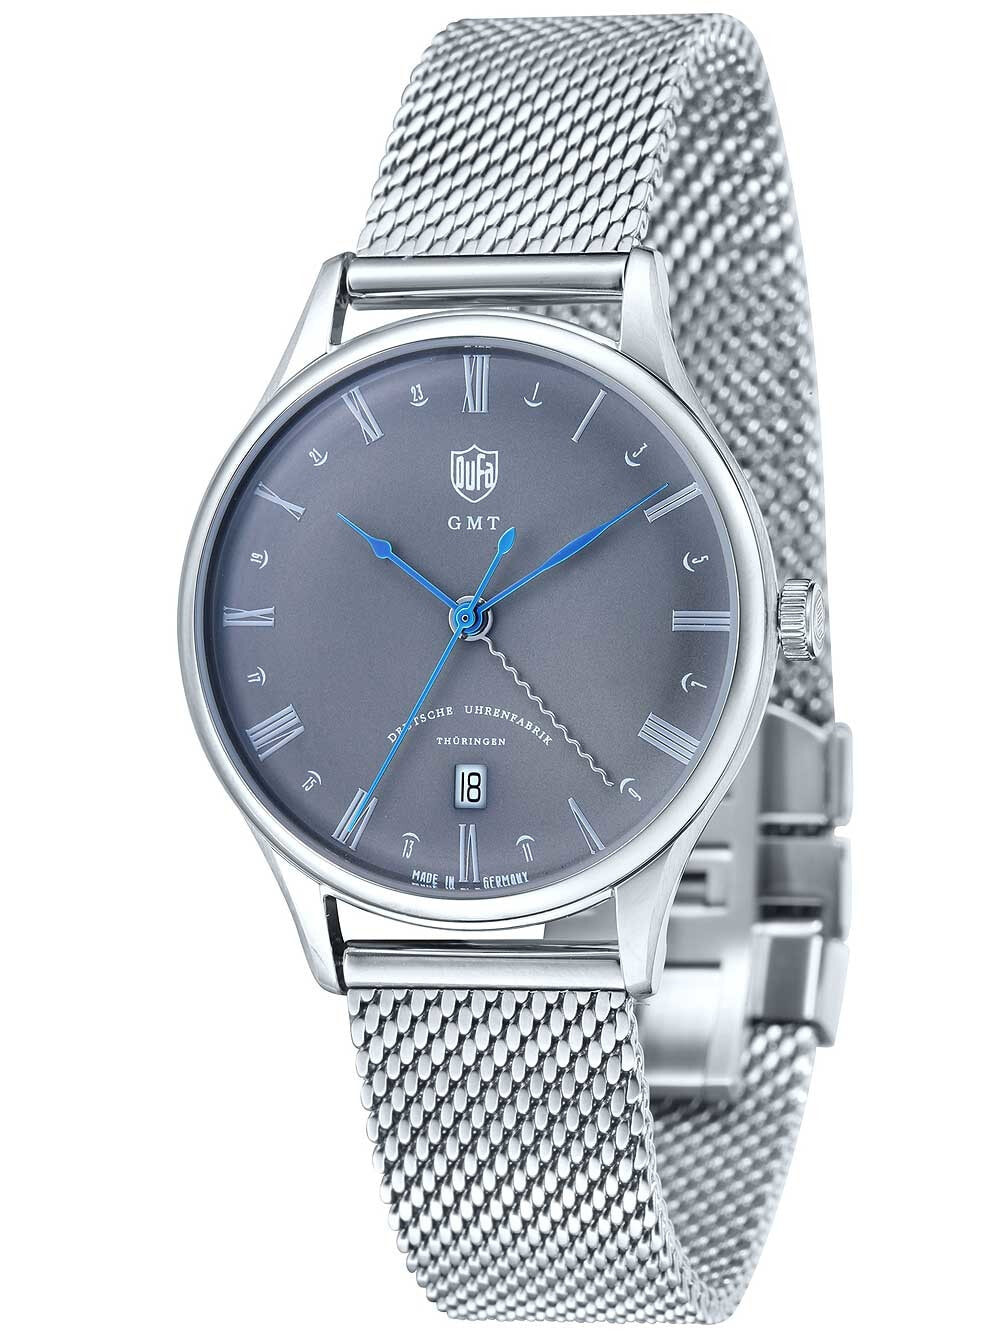 Мужские наручные часы с серебряным браслетом DuFa DF-9006-11 Weimar Mens Watch GMT 38mm 3 ATM